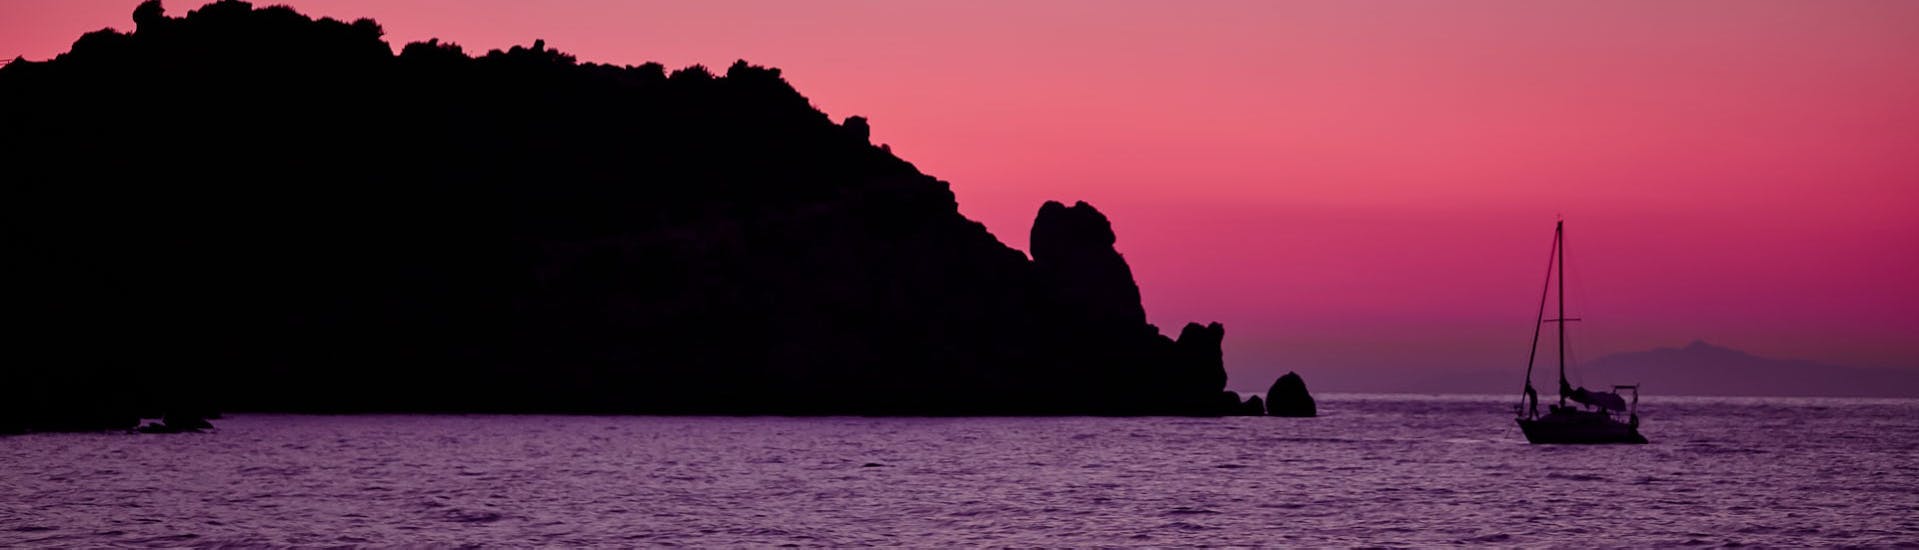 Vista dell'isola del Giglio al tramonto durante la gita in barca all'Isola del Giglio e Giannutri con Toscana Mini Crociere.